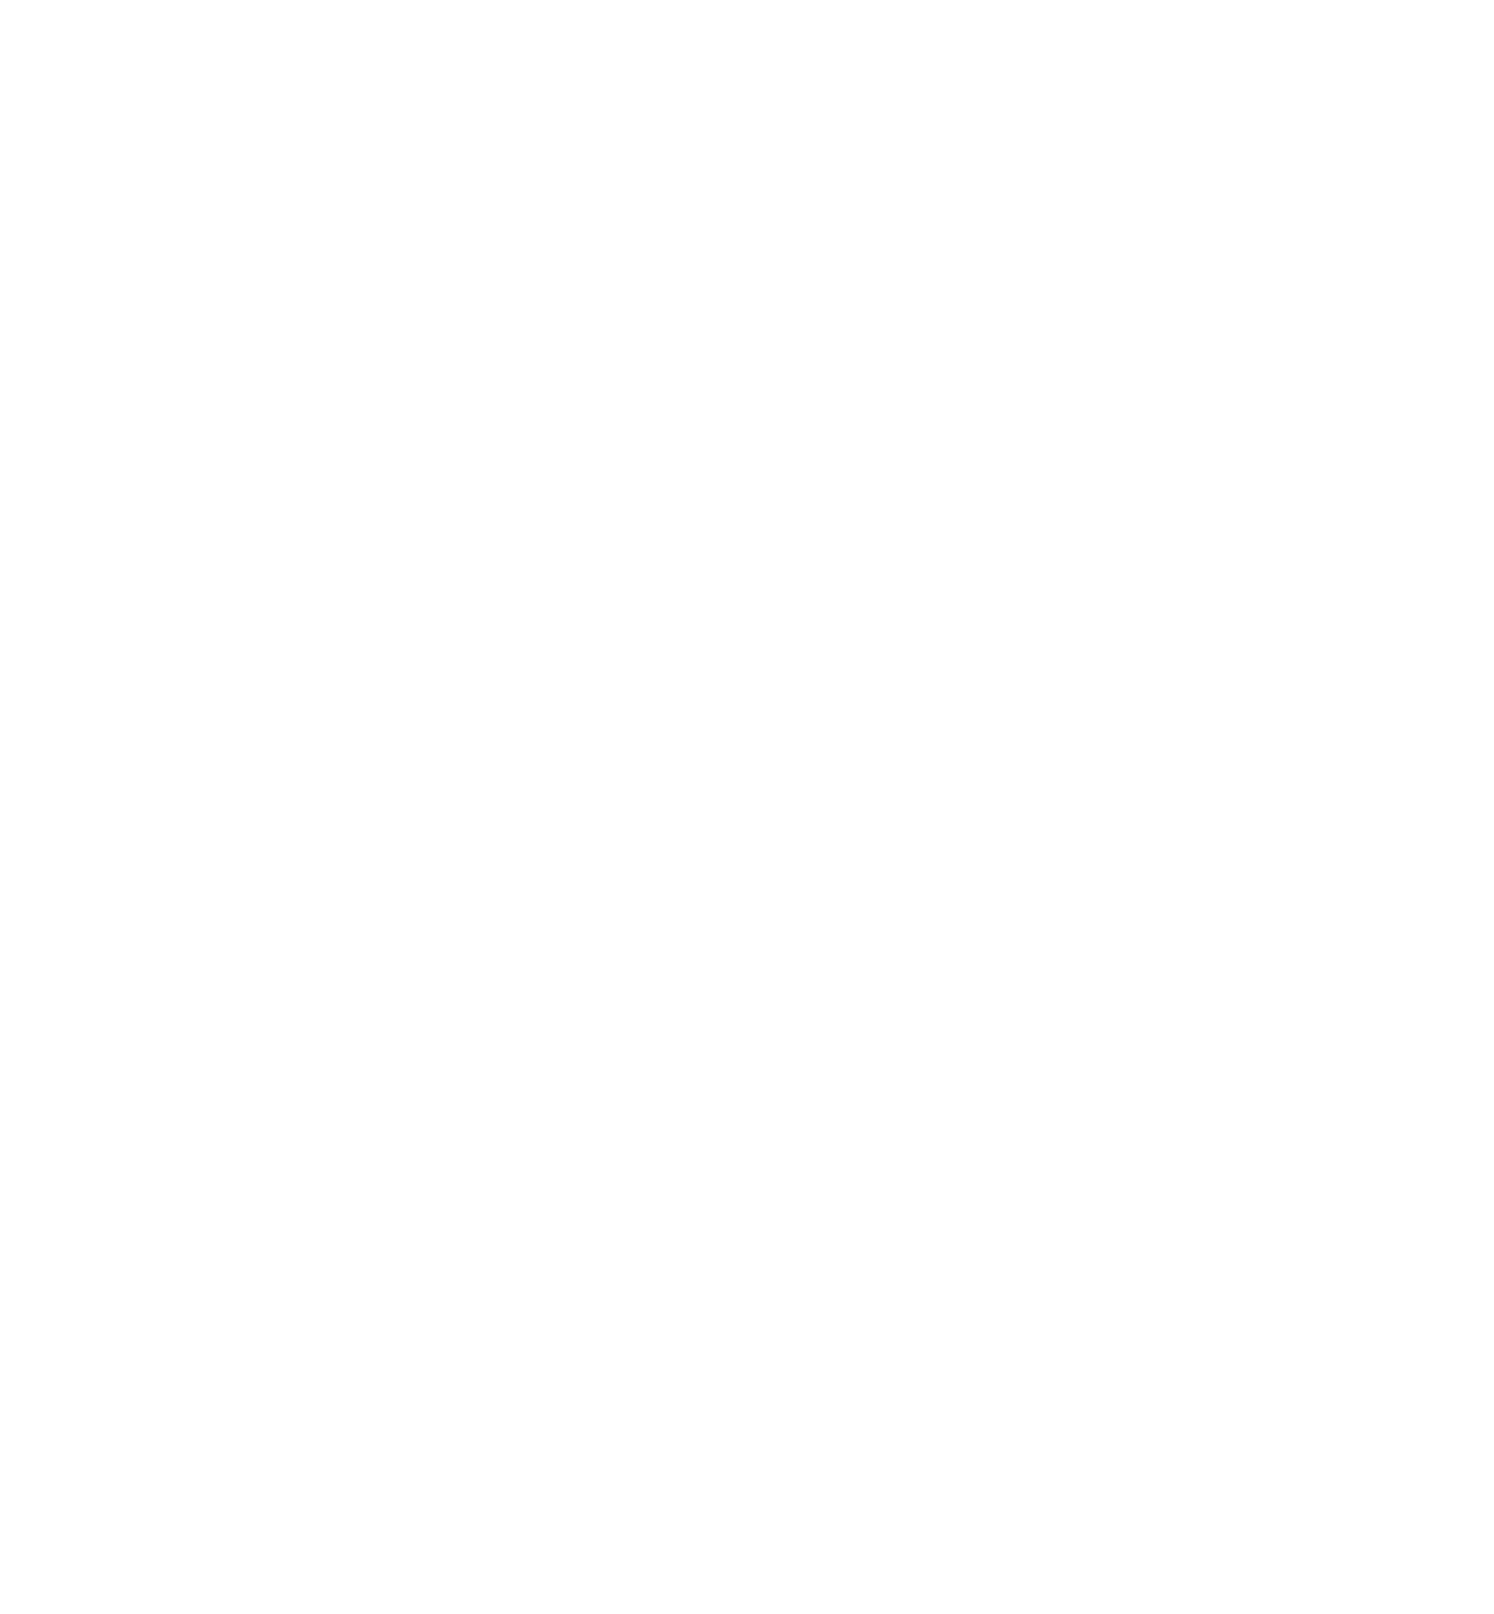 (c) Egehaddel.de